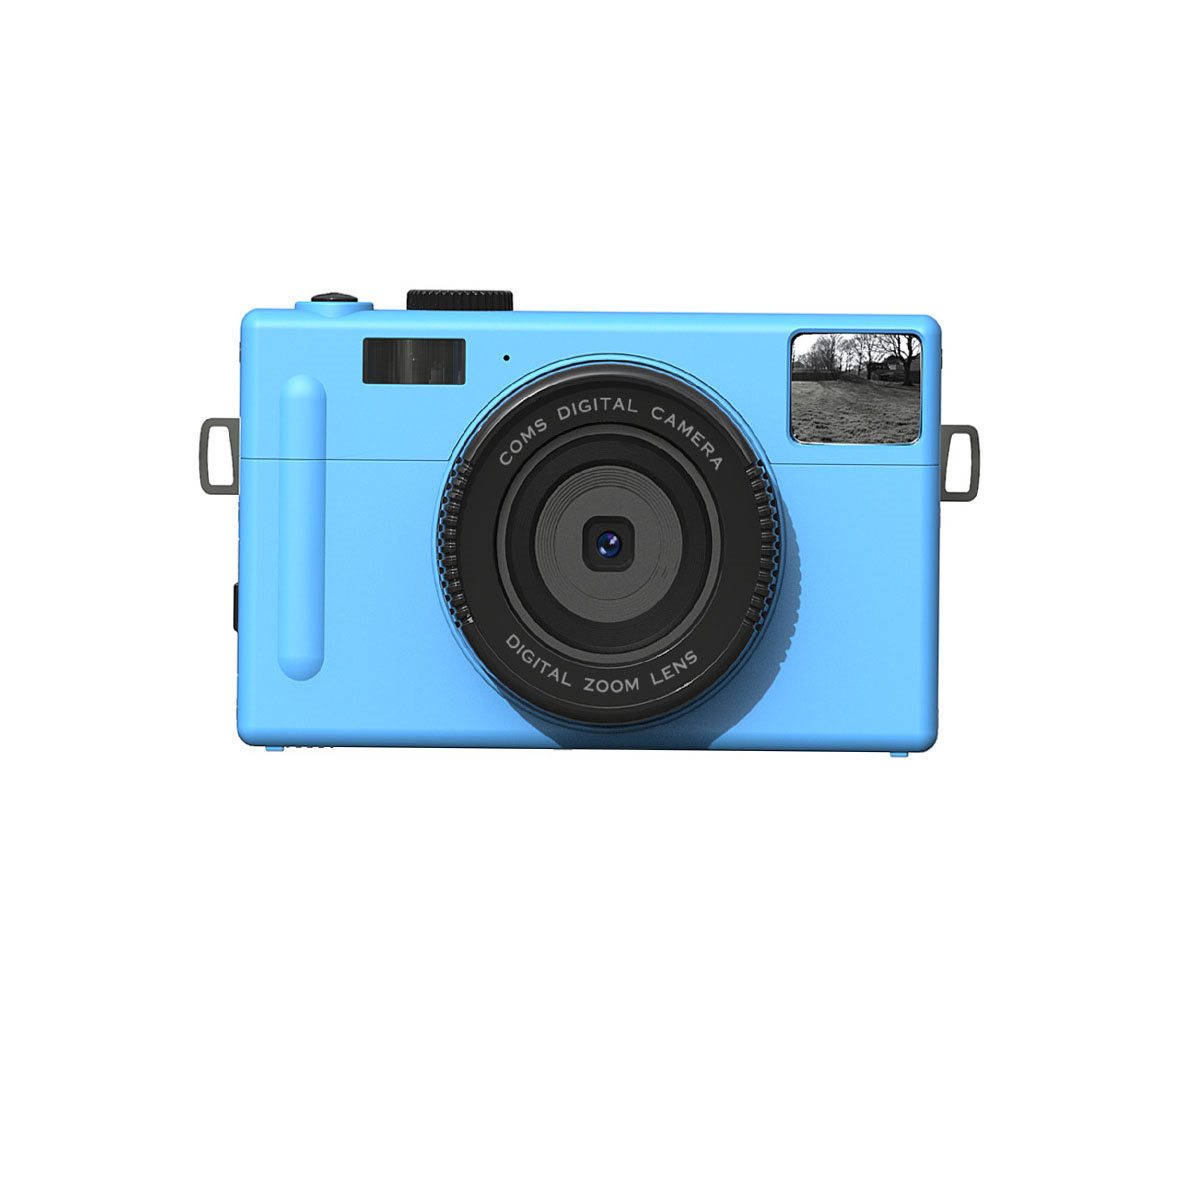 High-Definition-Digitalkamera auf blau- Gesichtserkennung mit Digitalkamera - Knopfdruck, SYNTEK Stummschaltung